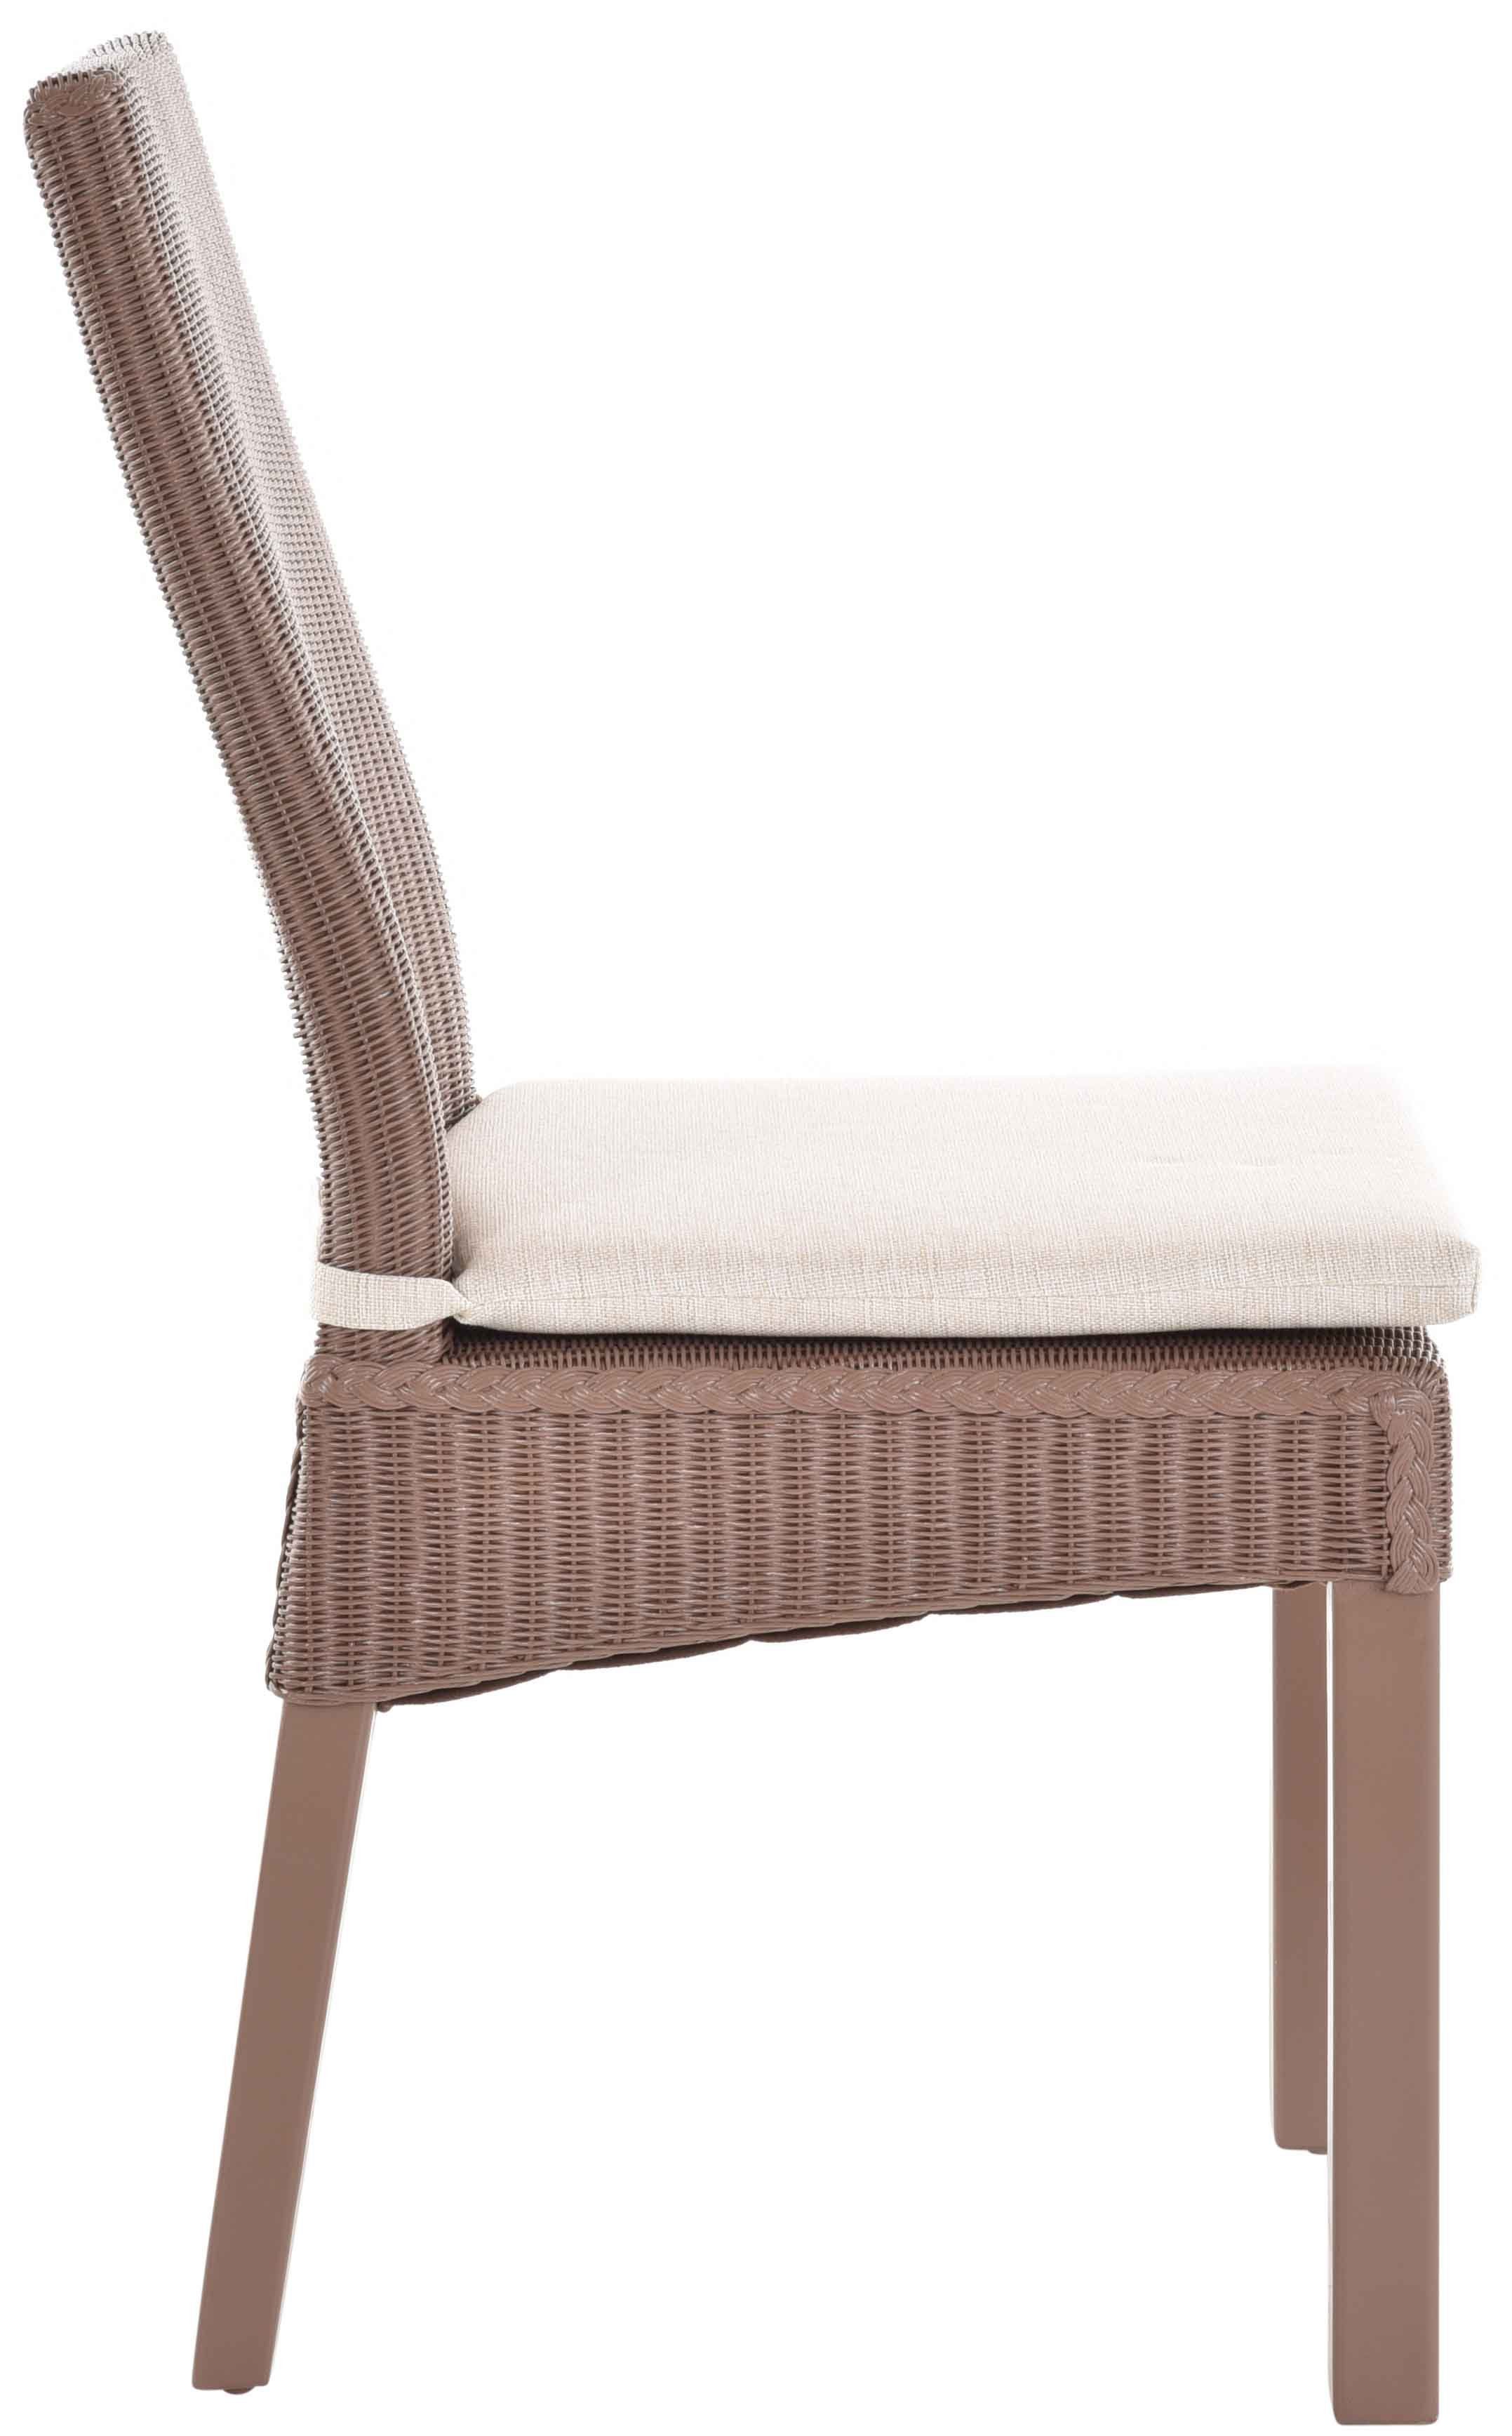 Krines Home Loom-Stuhl Küchenstuhl mit Esszimmerstuhl Esszimmer Kissen Esszimmerstuhl Holzrahmen Aubergine-Braun